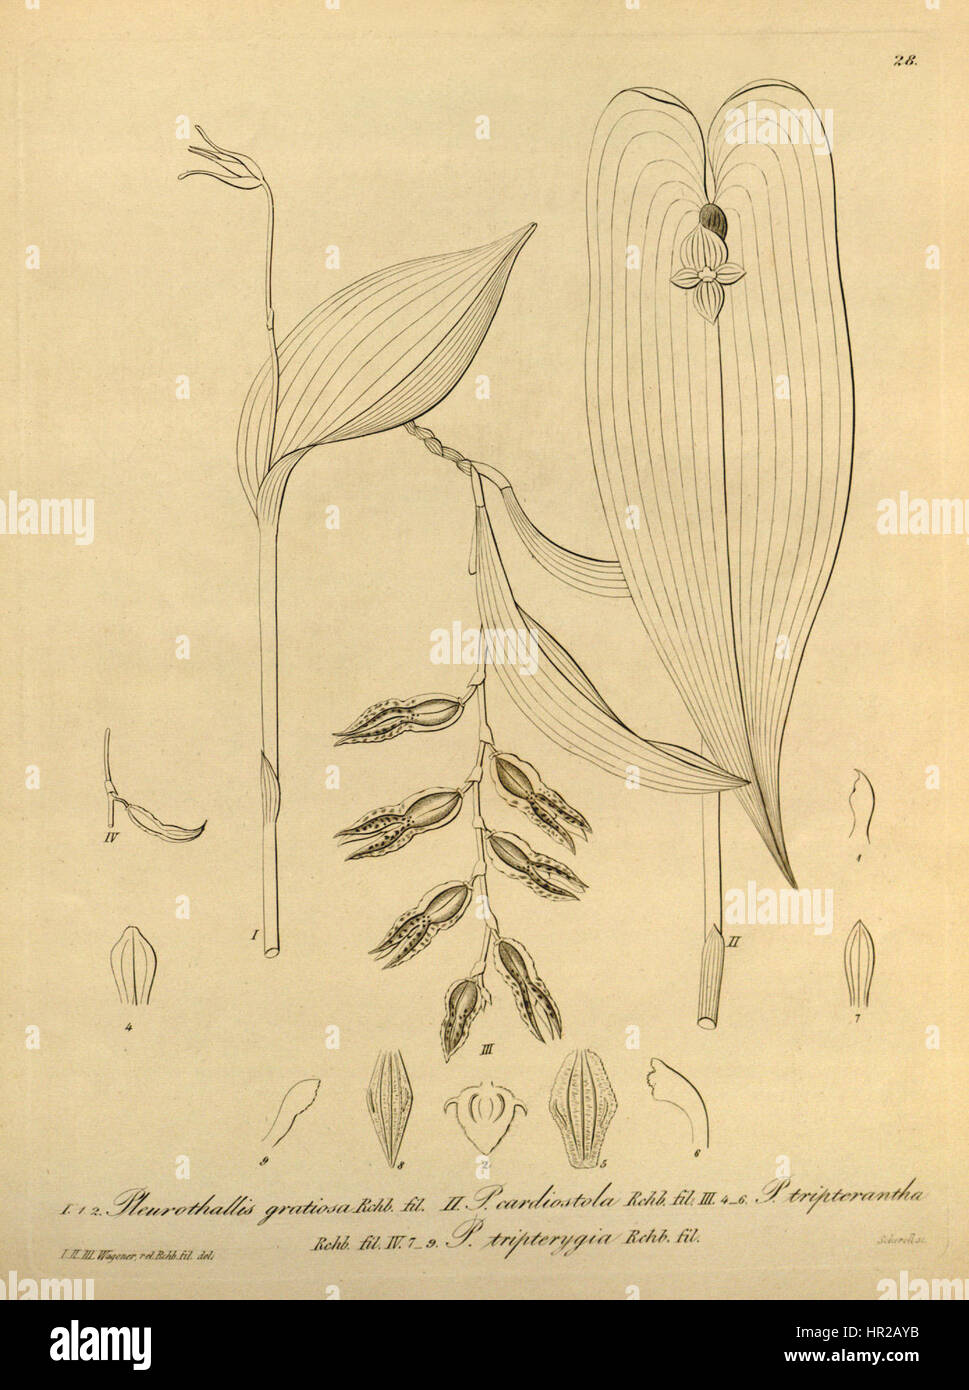 Pleurothallis gratiosa - Pleurothallis cardiostola - Pabstiella tripterantha (as Pleurothallis tripterantha and Pl.tripterygia) - Xenia vol 1 pl 28 (1858) Stock Photo